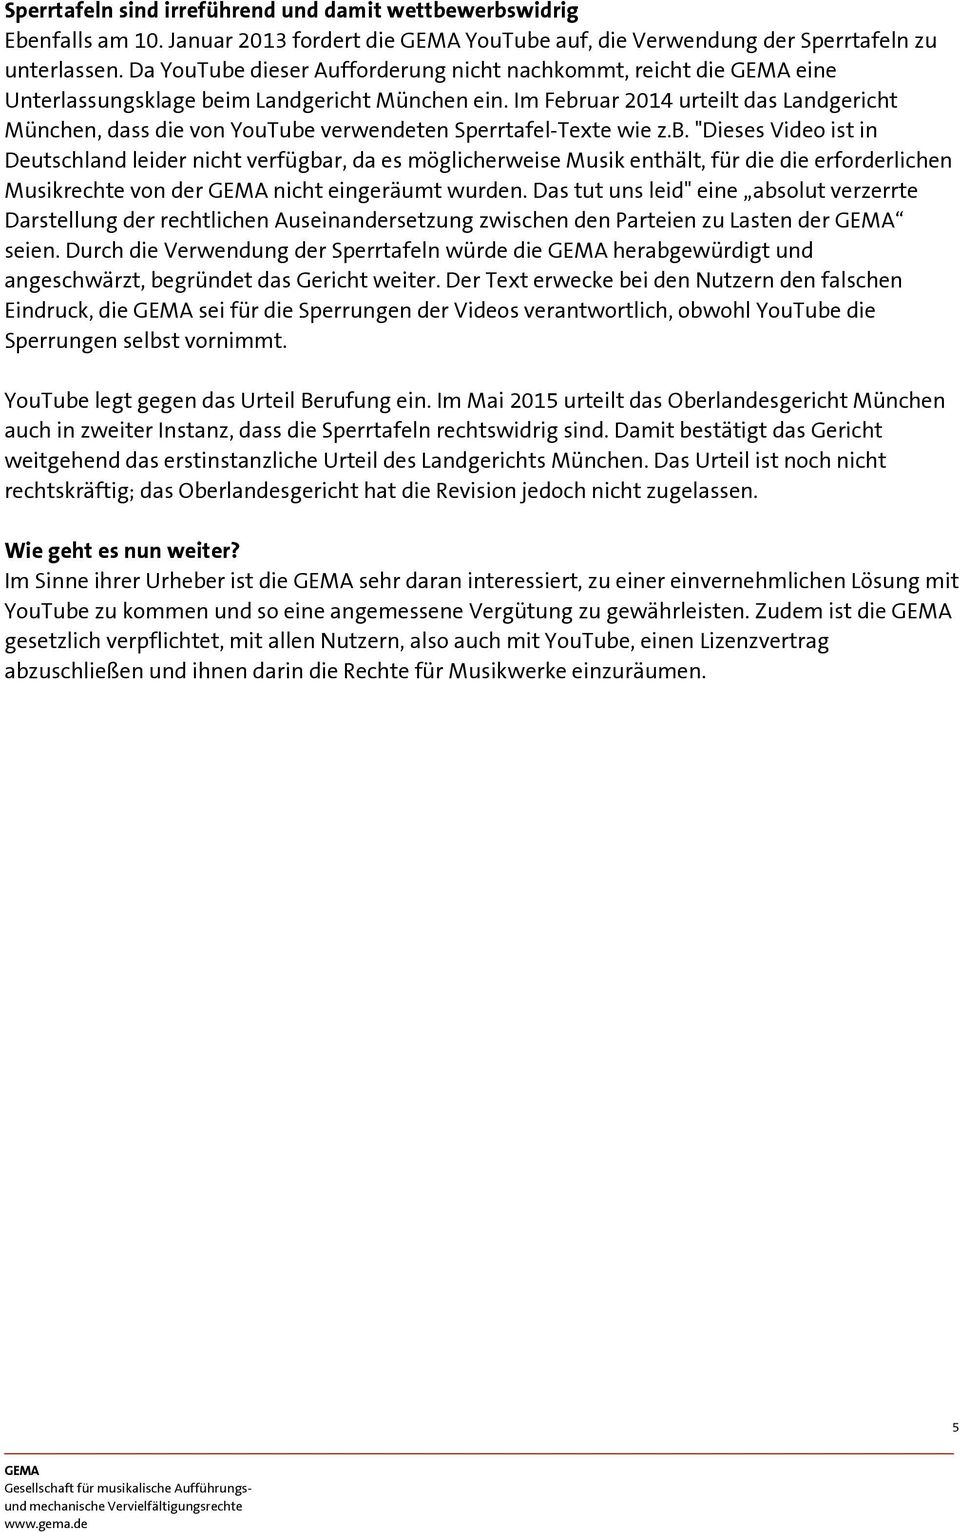 Im Februar 2014 urteilt das Landgericht München, dass die von YouTube verwendeten Sperrtafel-Texte wie z.b. "Dieses Video ist in Deutschland leider nicht verfügbar, da es möglicherweise Musik enthält, für die die erforderlichen Musikrechte von der nicht eingeräumt wurden.